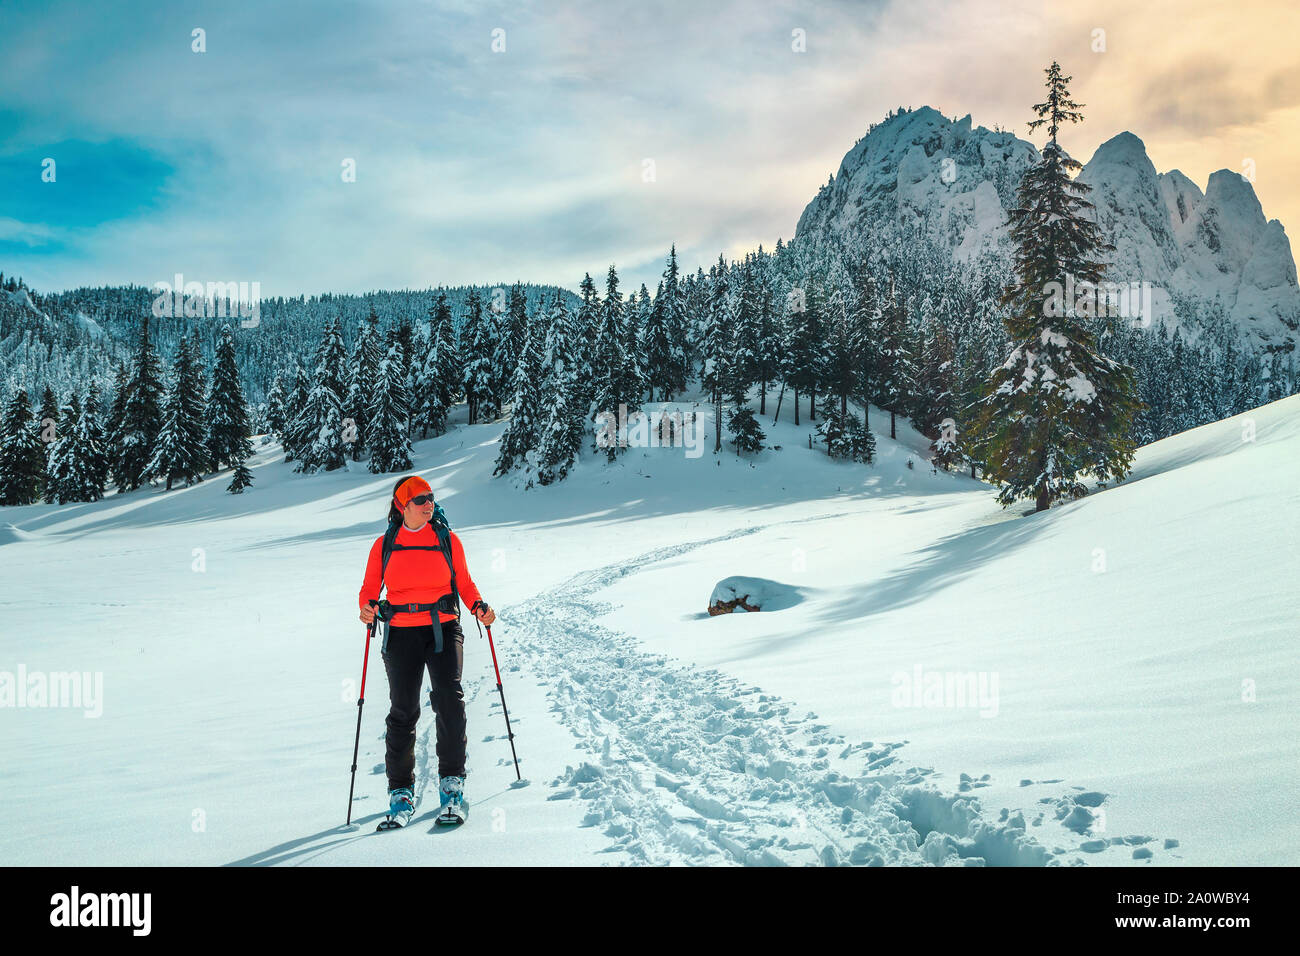 Gerne backpacker Frau im frischen Pulverschnee. Skitouren auf den verschneiten Hügel. Backcountry skier Frau mit bunten Rucksack und Mountain Equipment Stockfoto